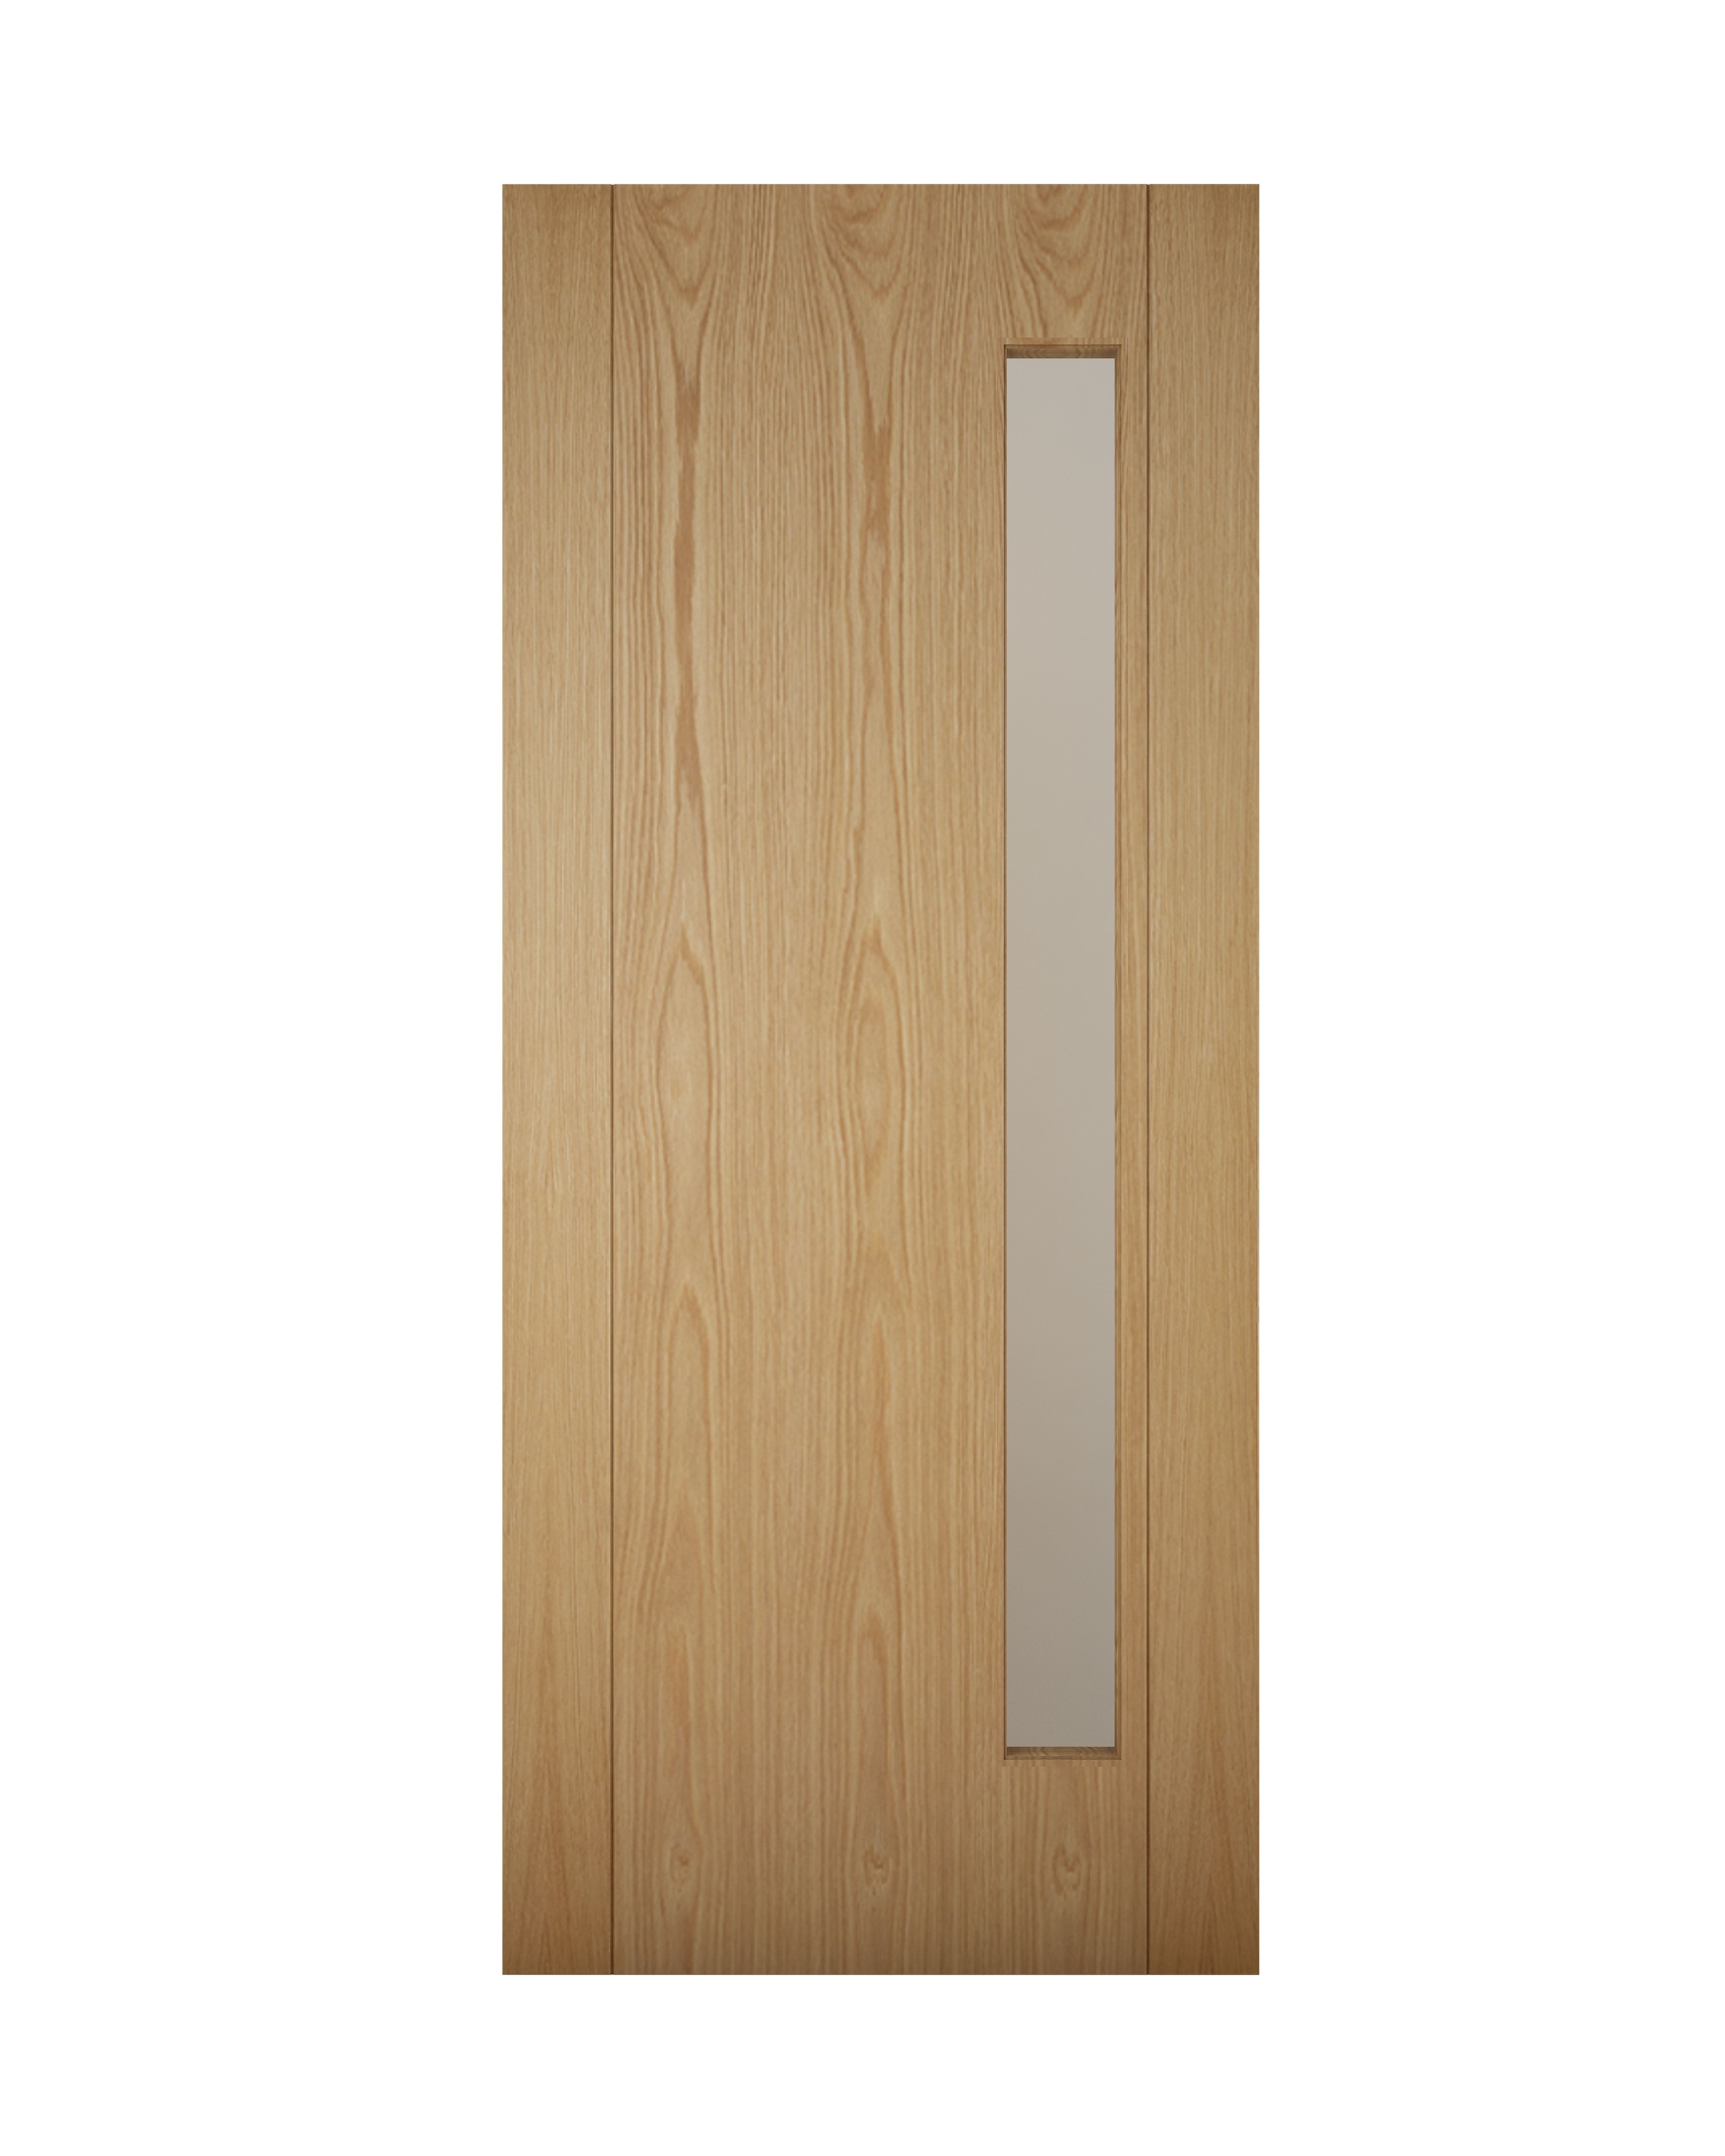 Glazed White oak veneer Left & RHed Front Door set & letter plate, (H)2125mm (W)907mm